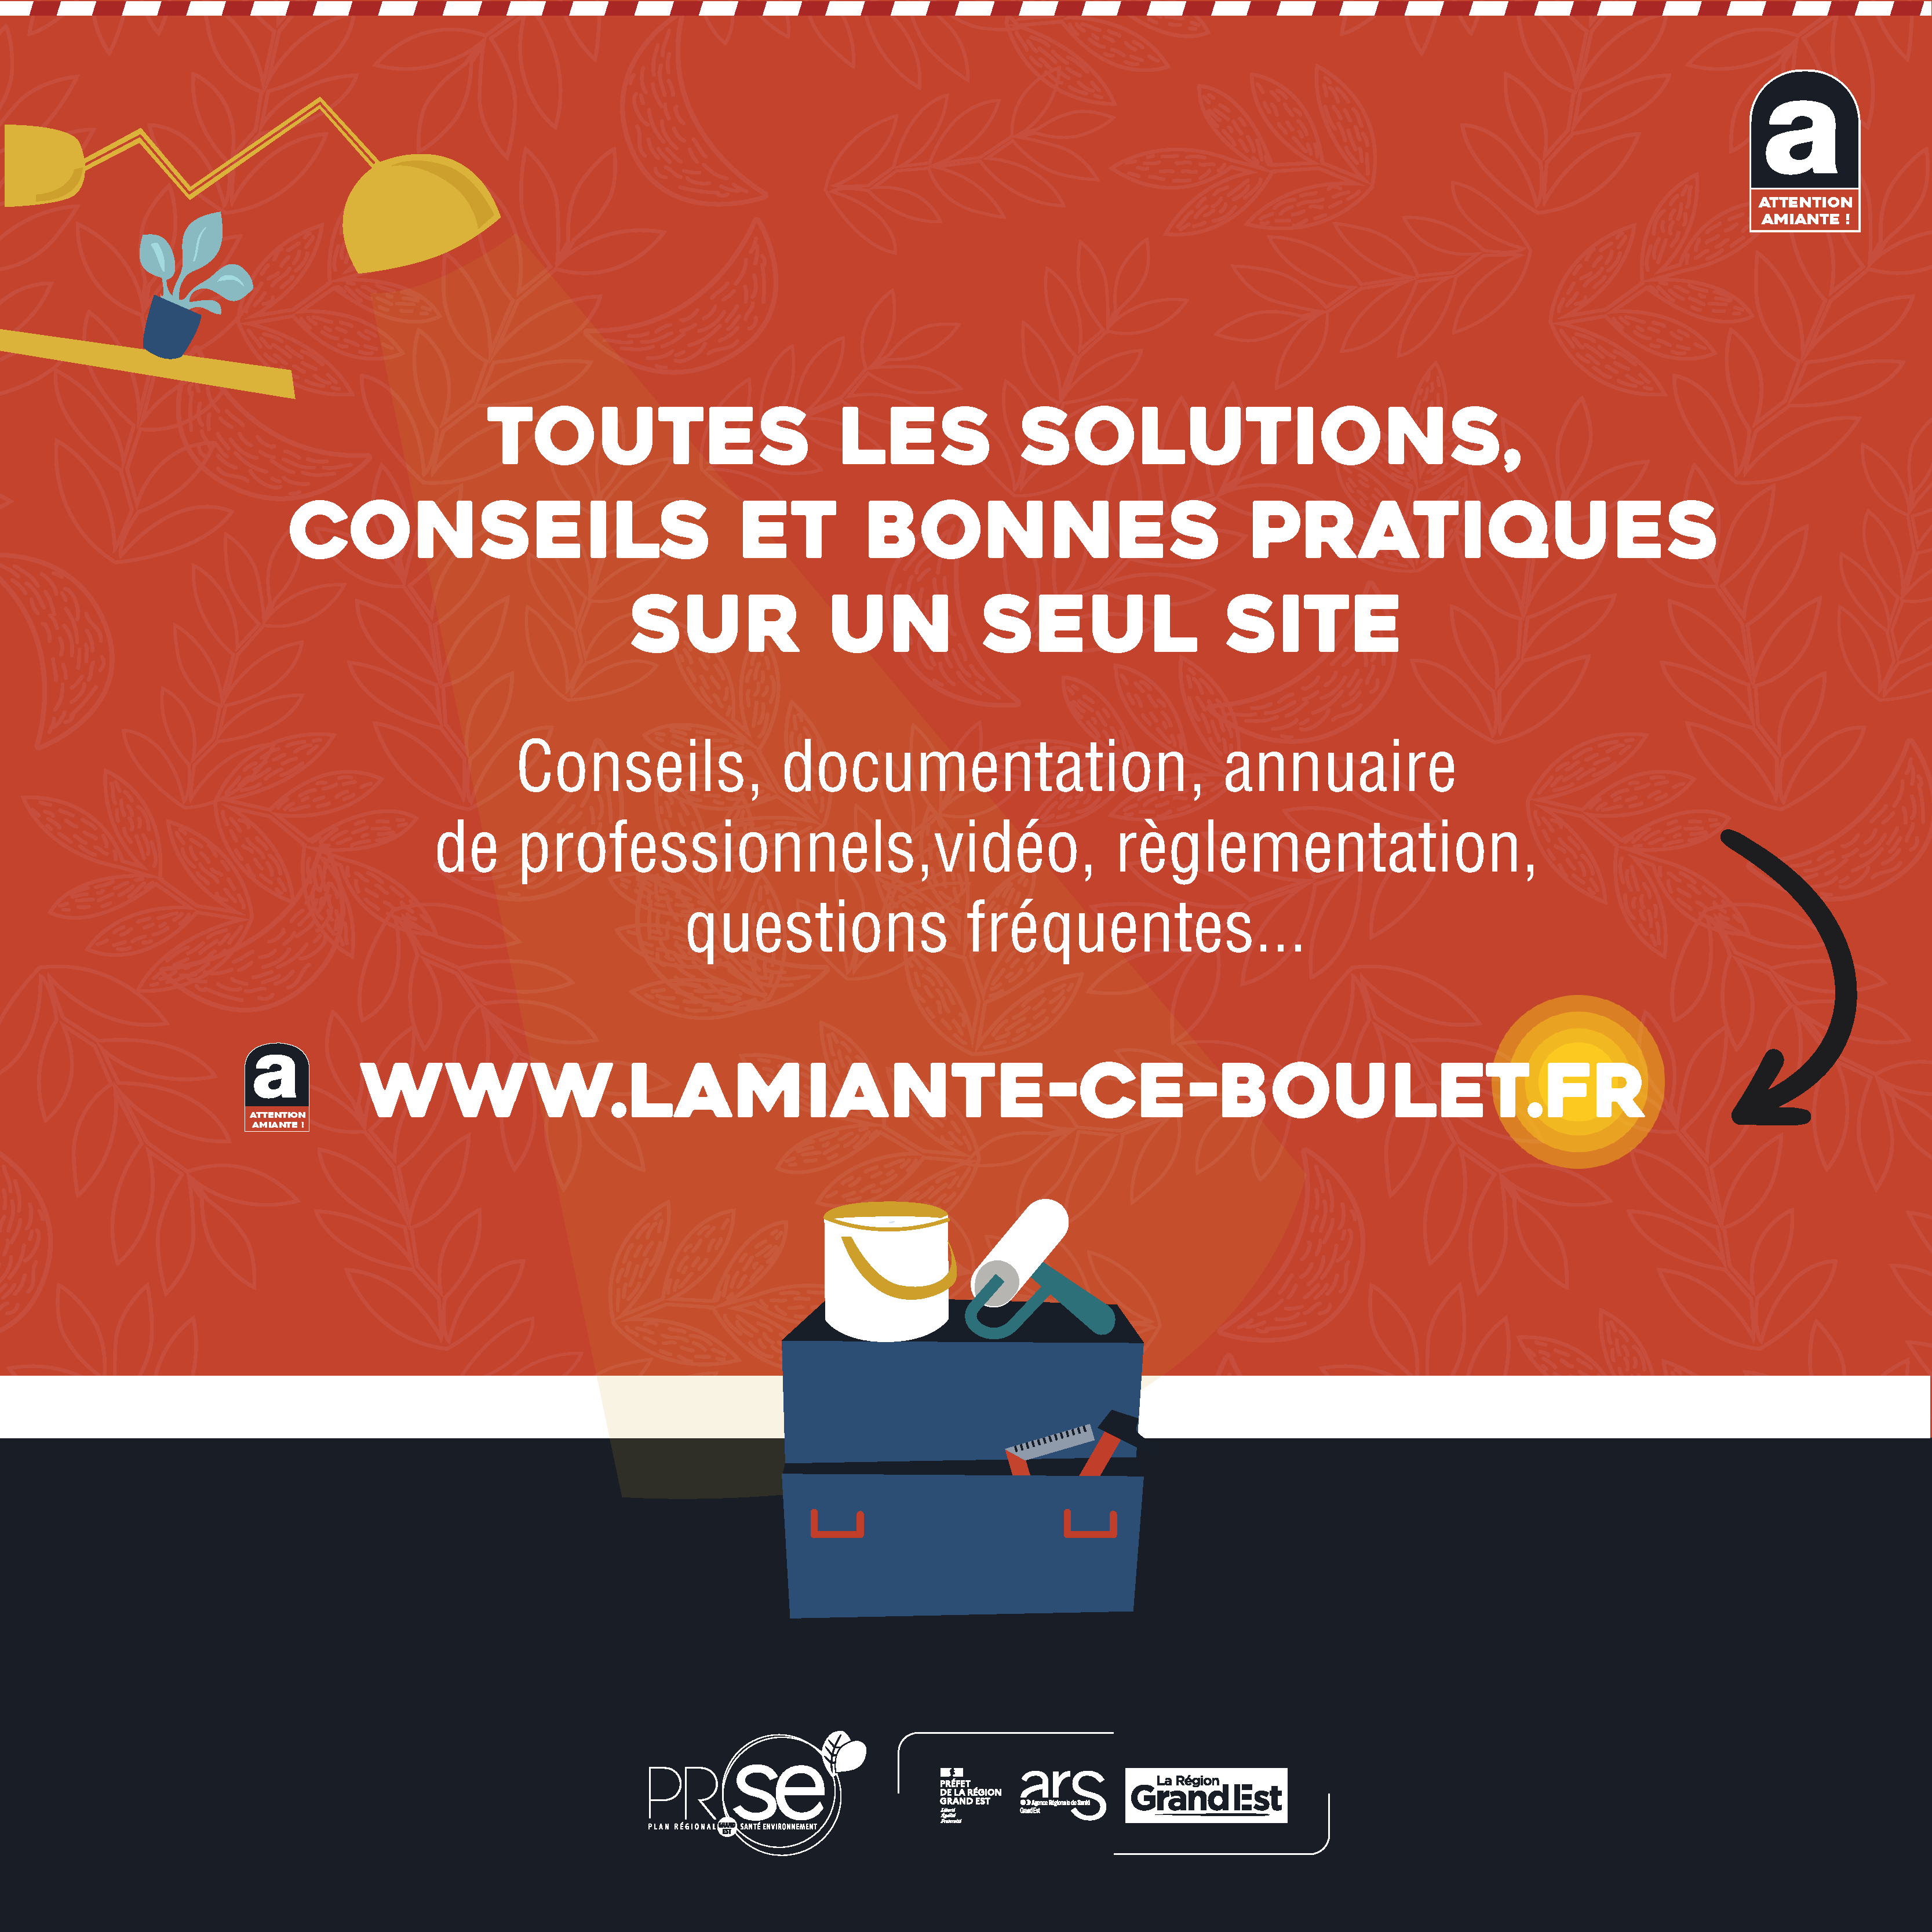 Toutes les solutions, conseils et bonnes pratiques sur un seul site : www.amiante-ce-boulet.fr 